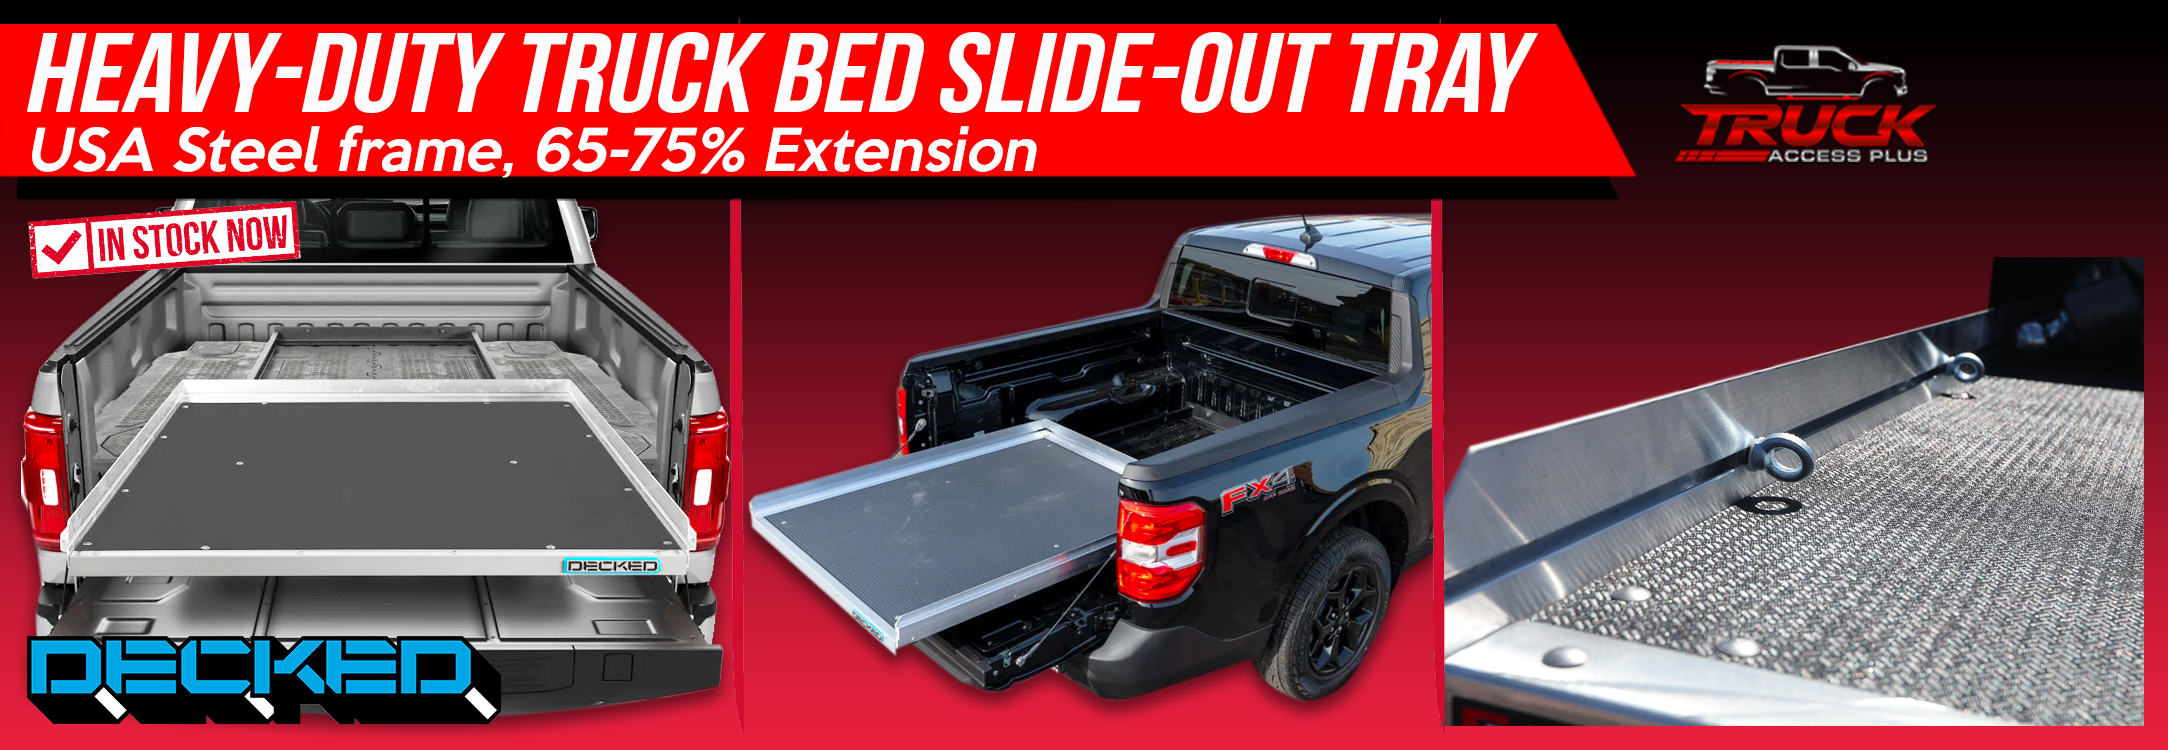 cargo glide cg1000 truck bed slides